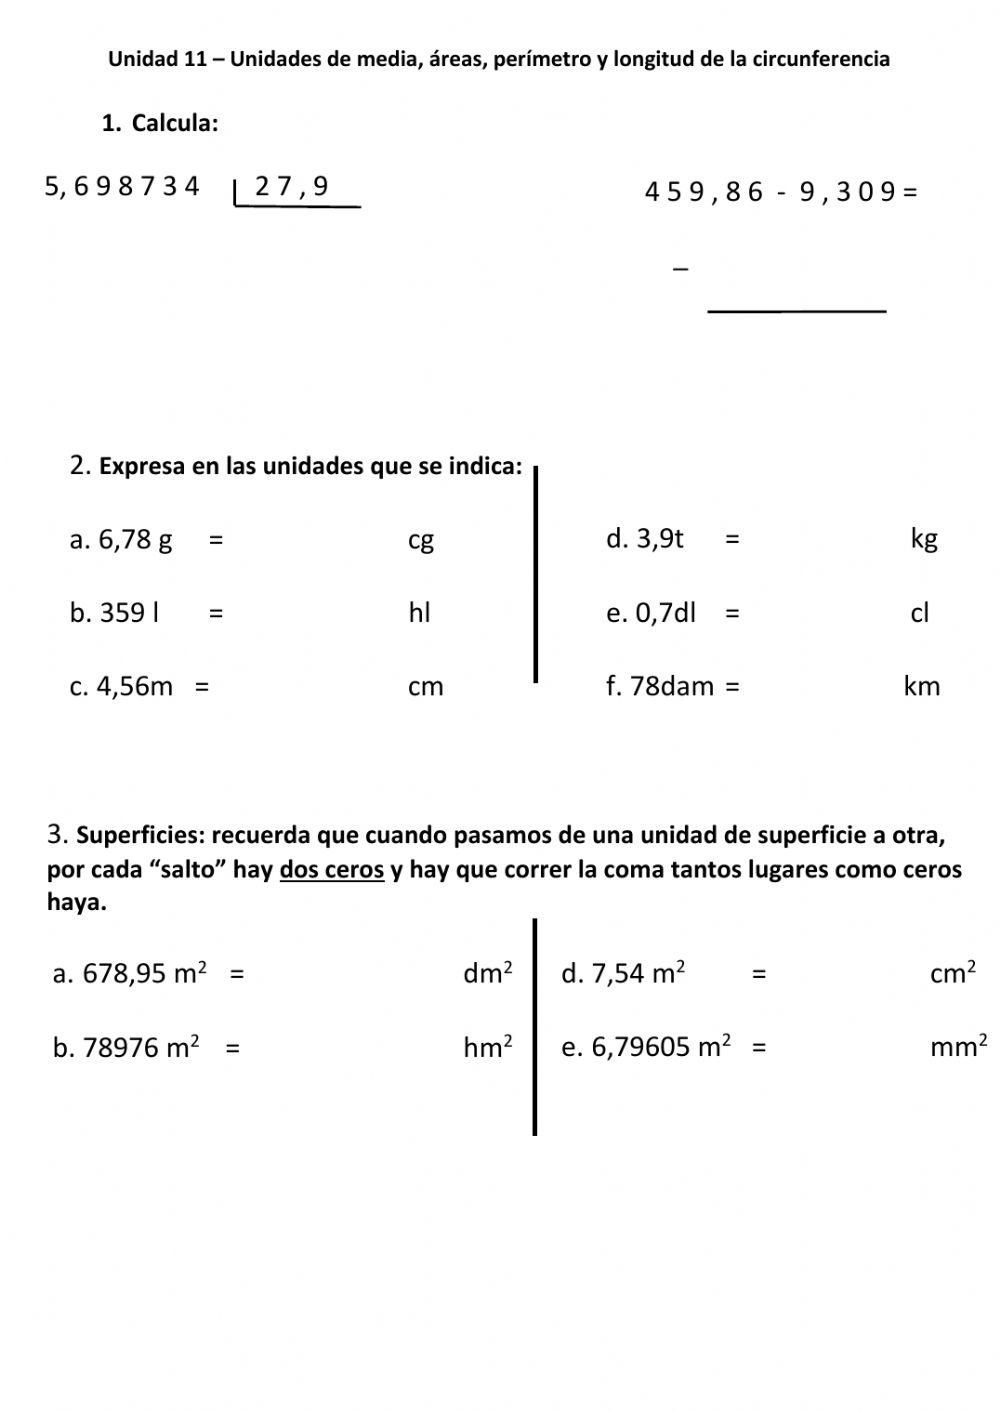 Unidades de medida, áreas, perímetro y longitud de circunferencia.